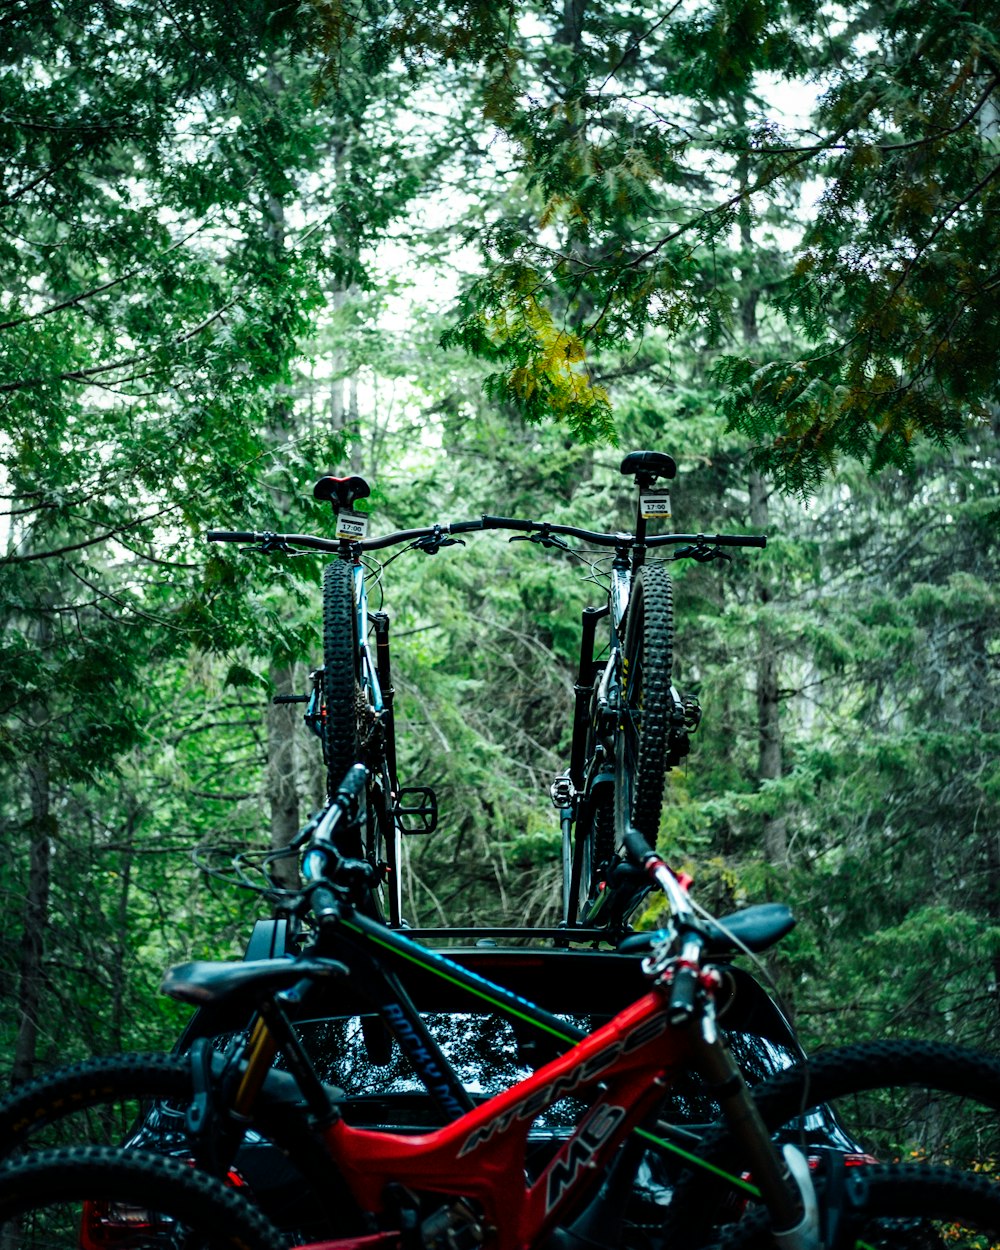 Hecht von Fahrrädern in der Nähe von Bäumen